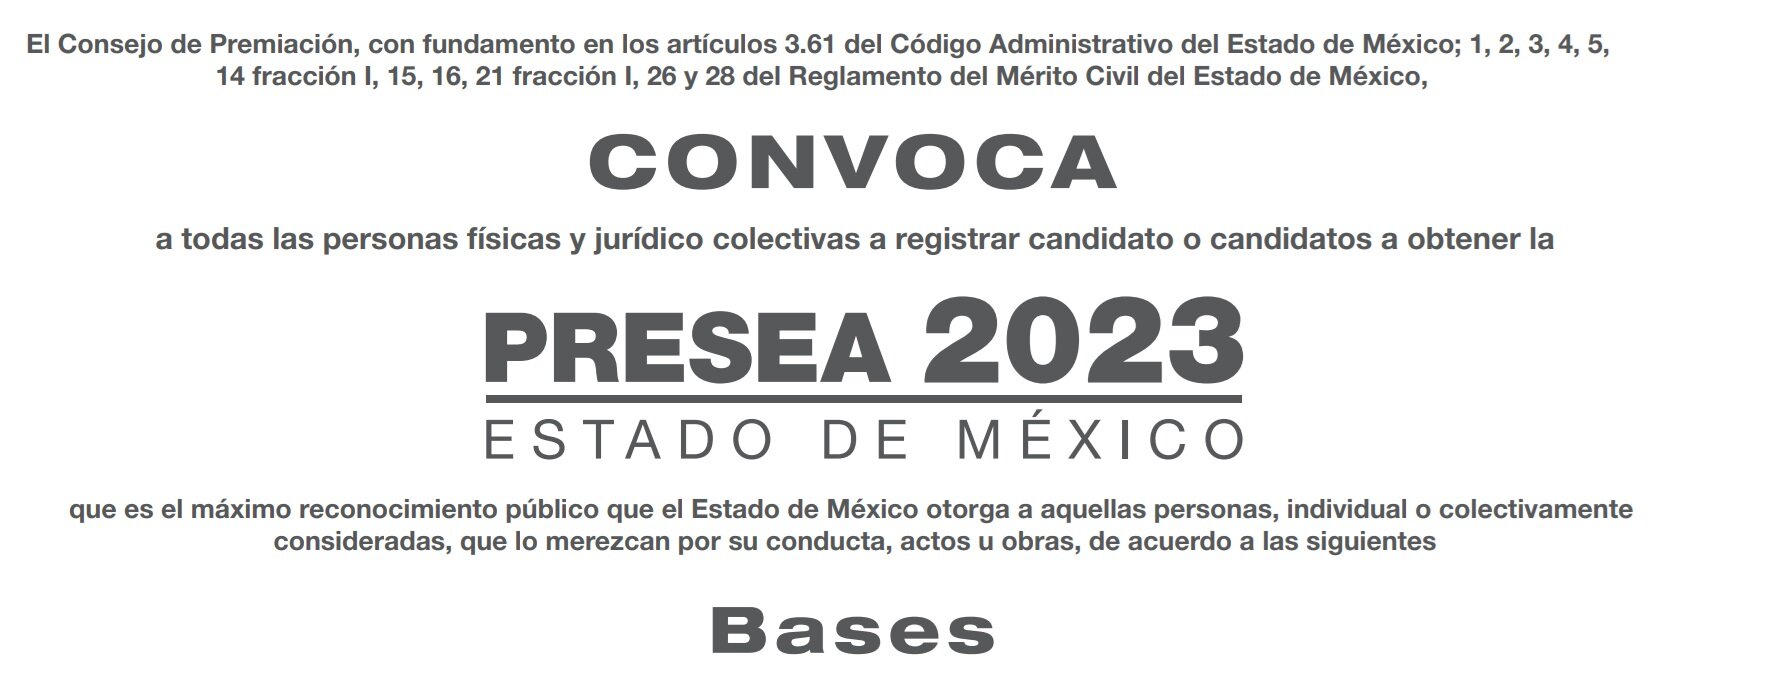  link de la Convocatoria "Presea 2023. Estado de México" en la página web de la institución.